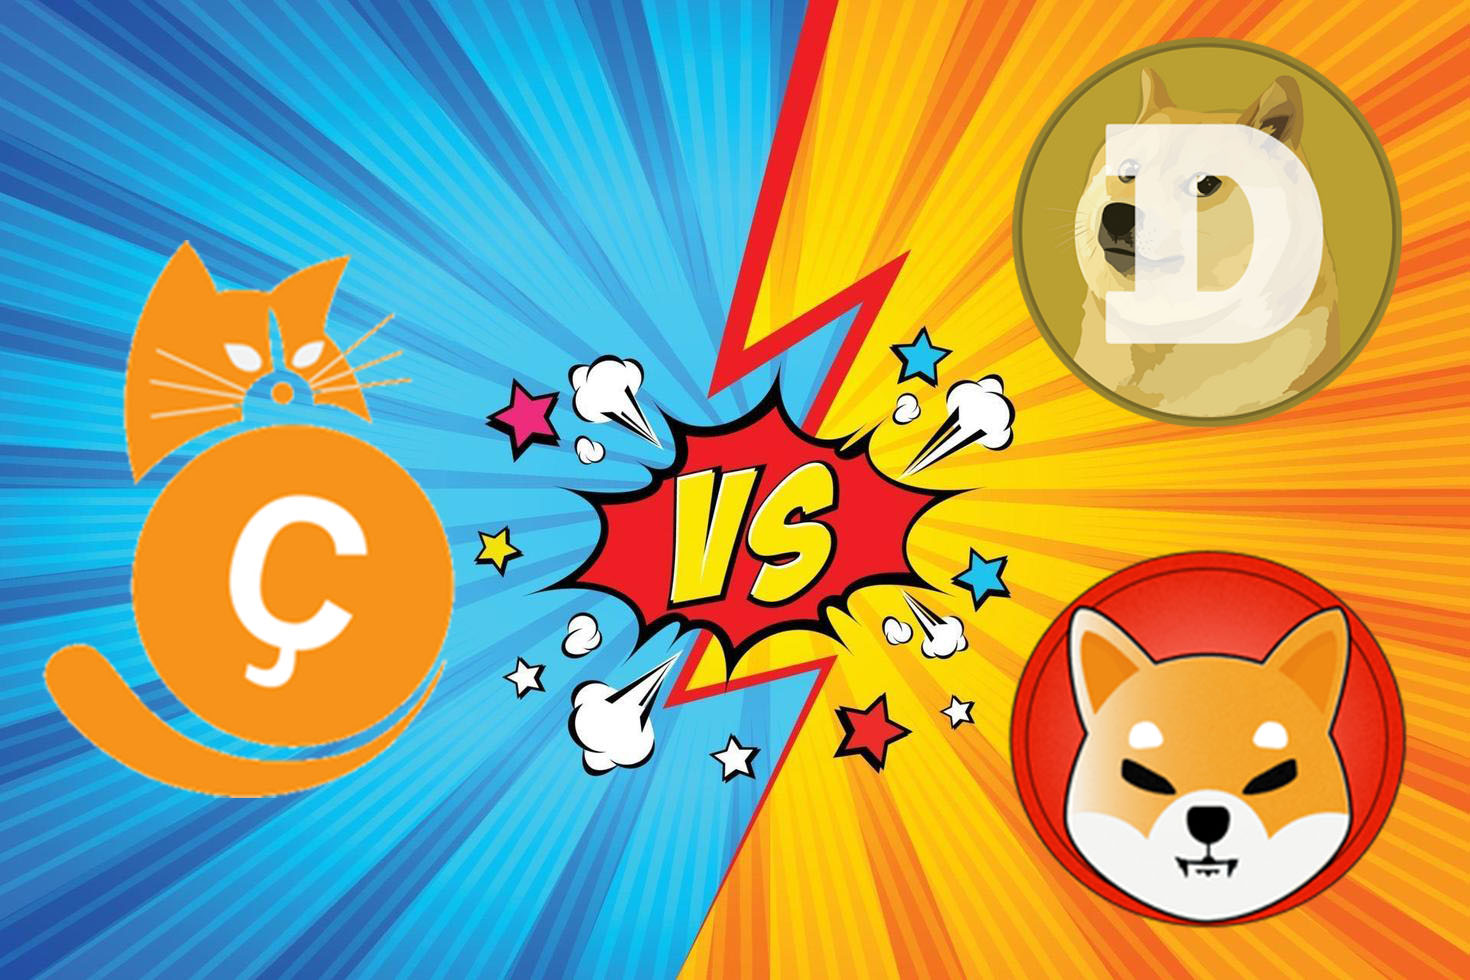 La rivalidad entre perros y gatos llega a las criptomonedas: Catcoin vs. Shiba Inu y Dogecoin | Tecnología - ComputerHoy.com